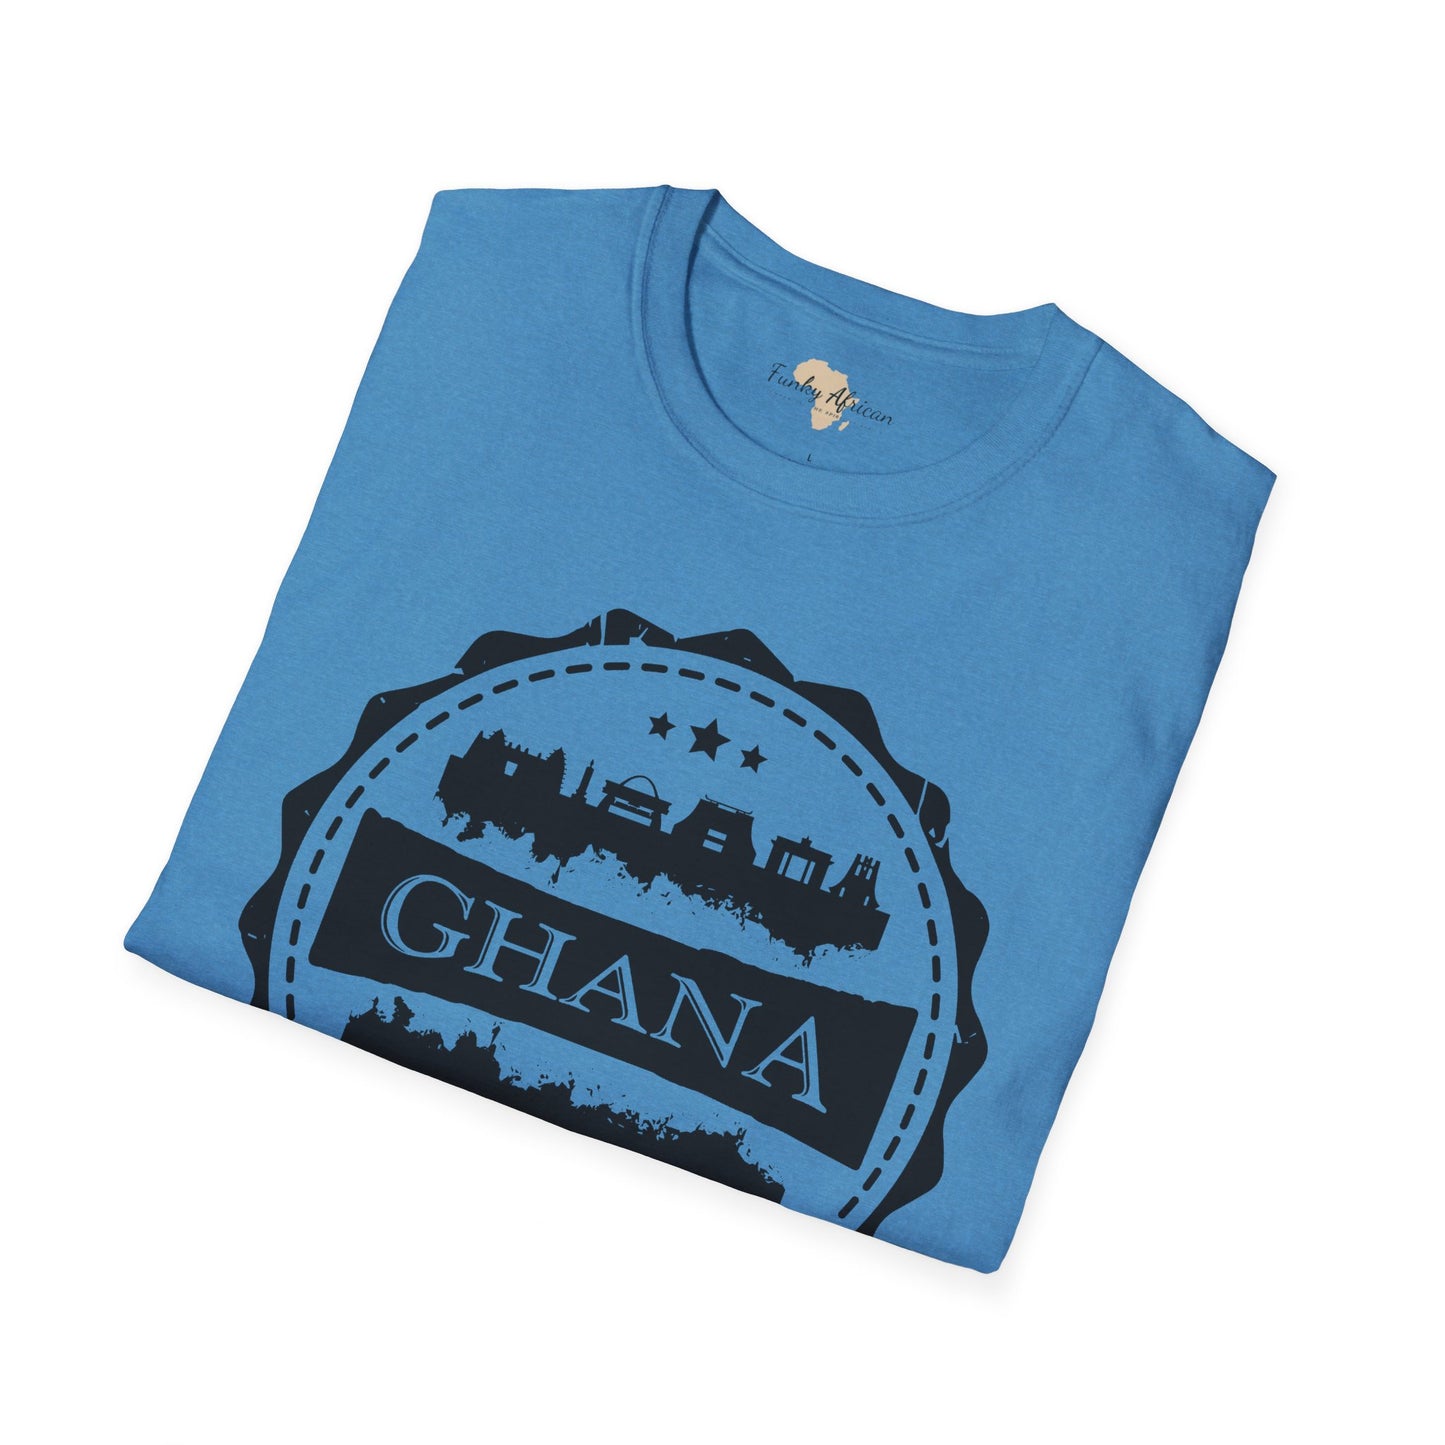 Ghana Stamp unisex tee